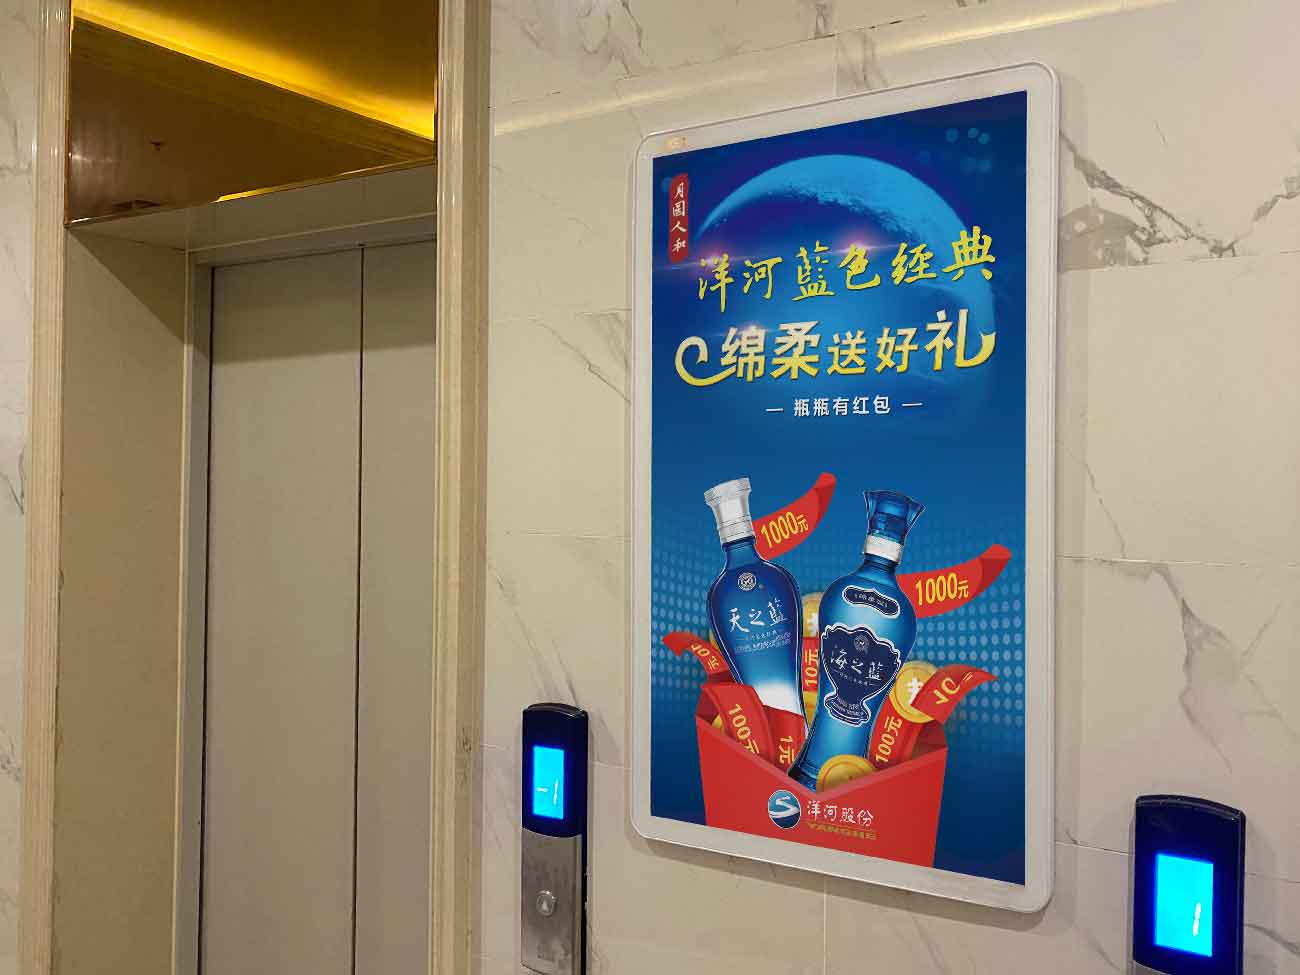 天津电梯框架广告海量媒体资源丨思框传媒社区广告